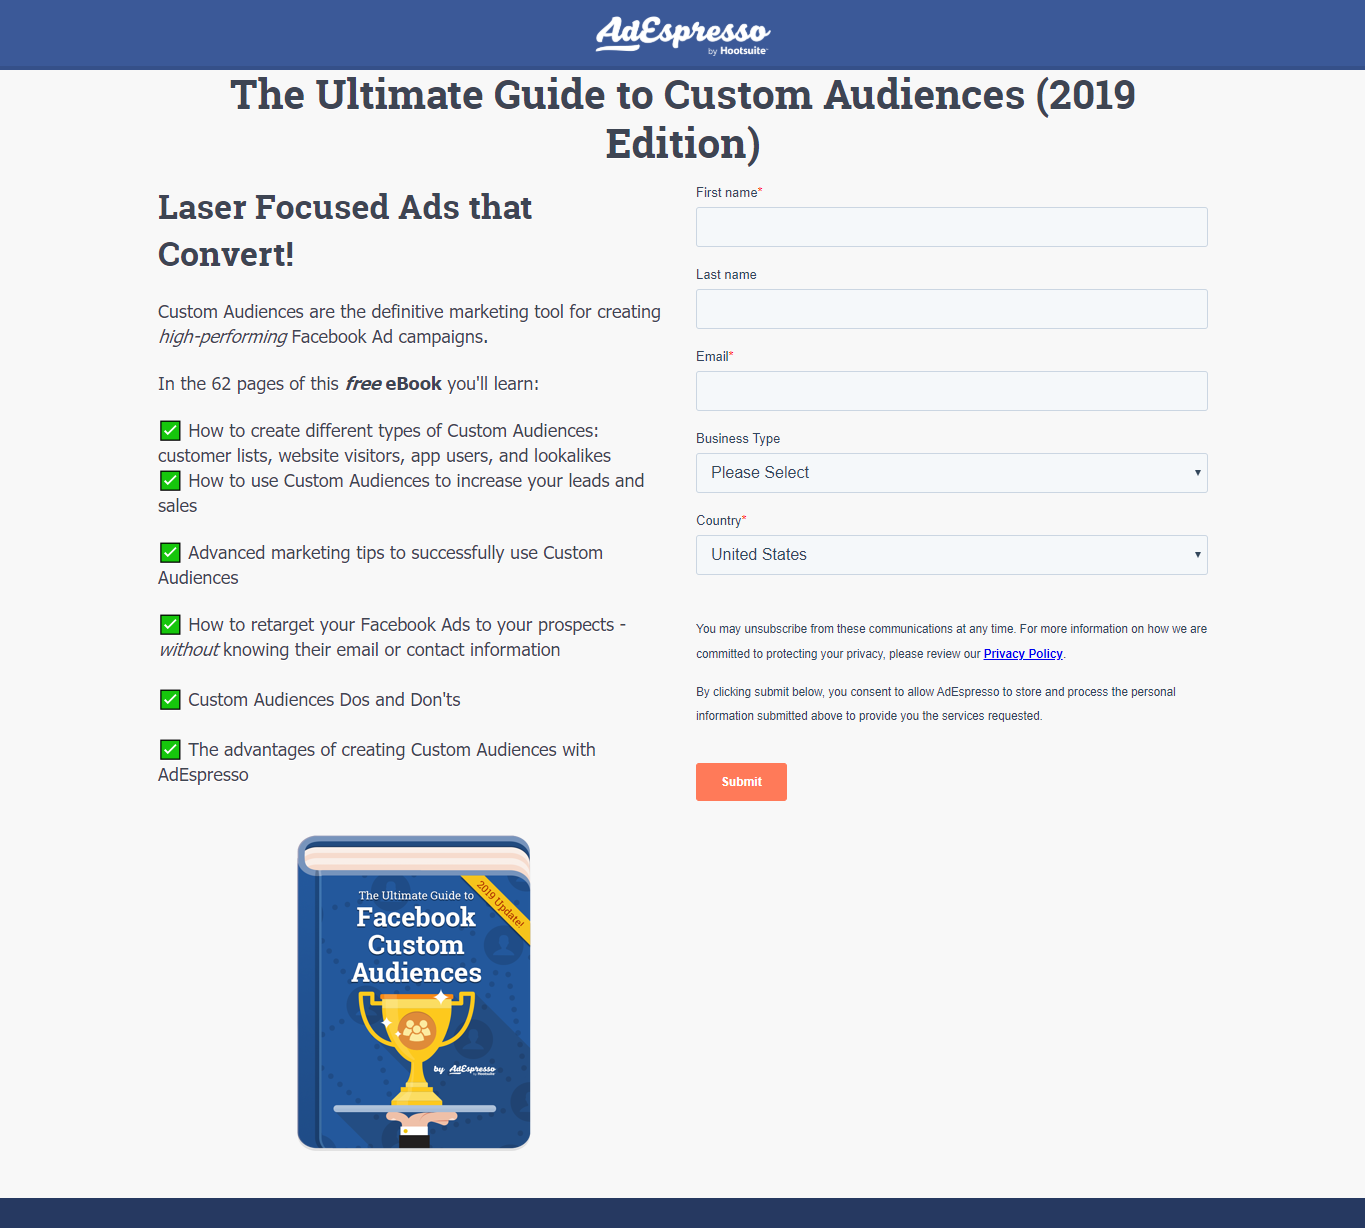 ebooks-adespresso-facebook-custom-audiences-guide-2019-09-11-10_09_03